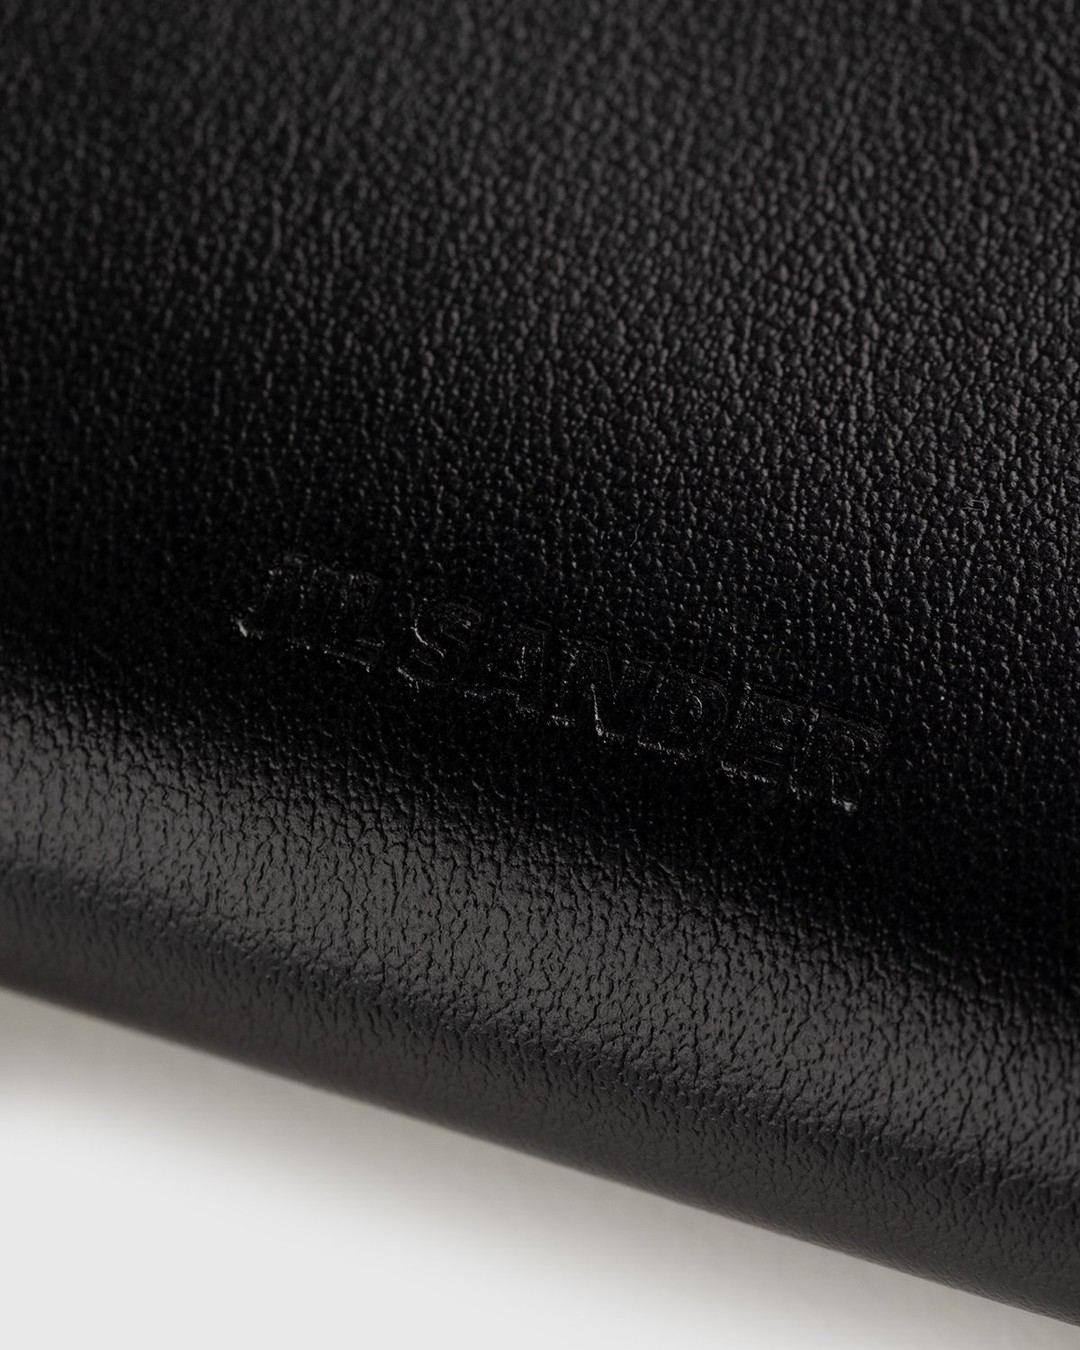 Jil Sander – Leather Card Wallet Black - Wallets - Black - Image 4